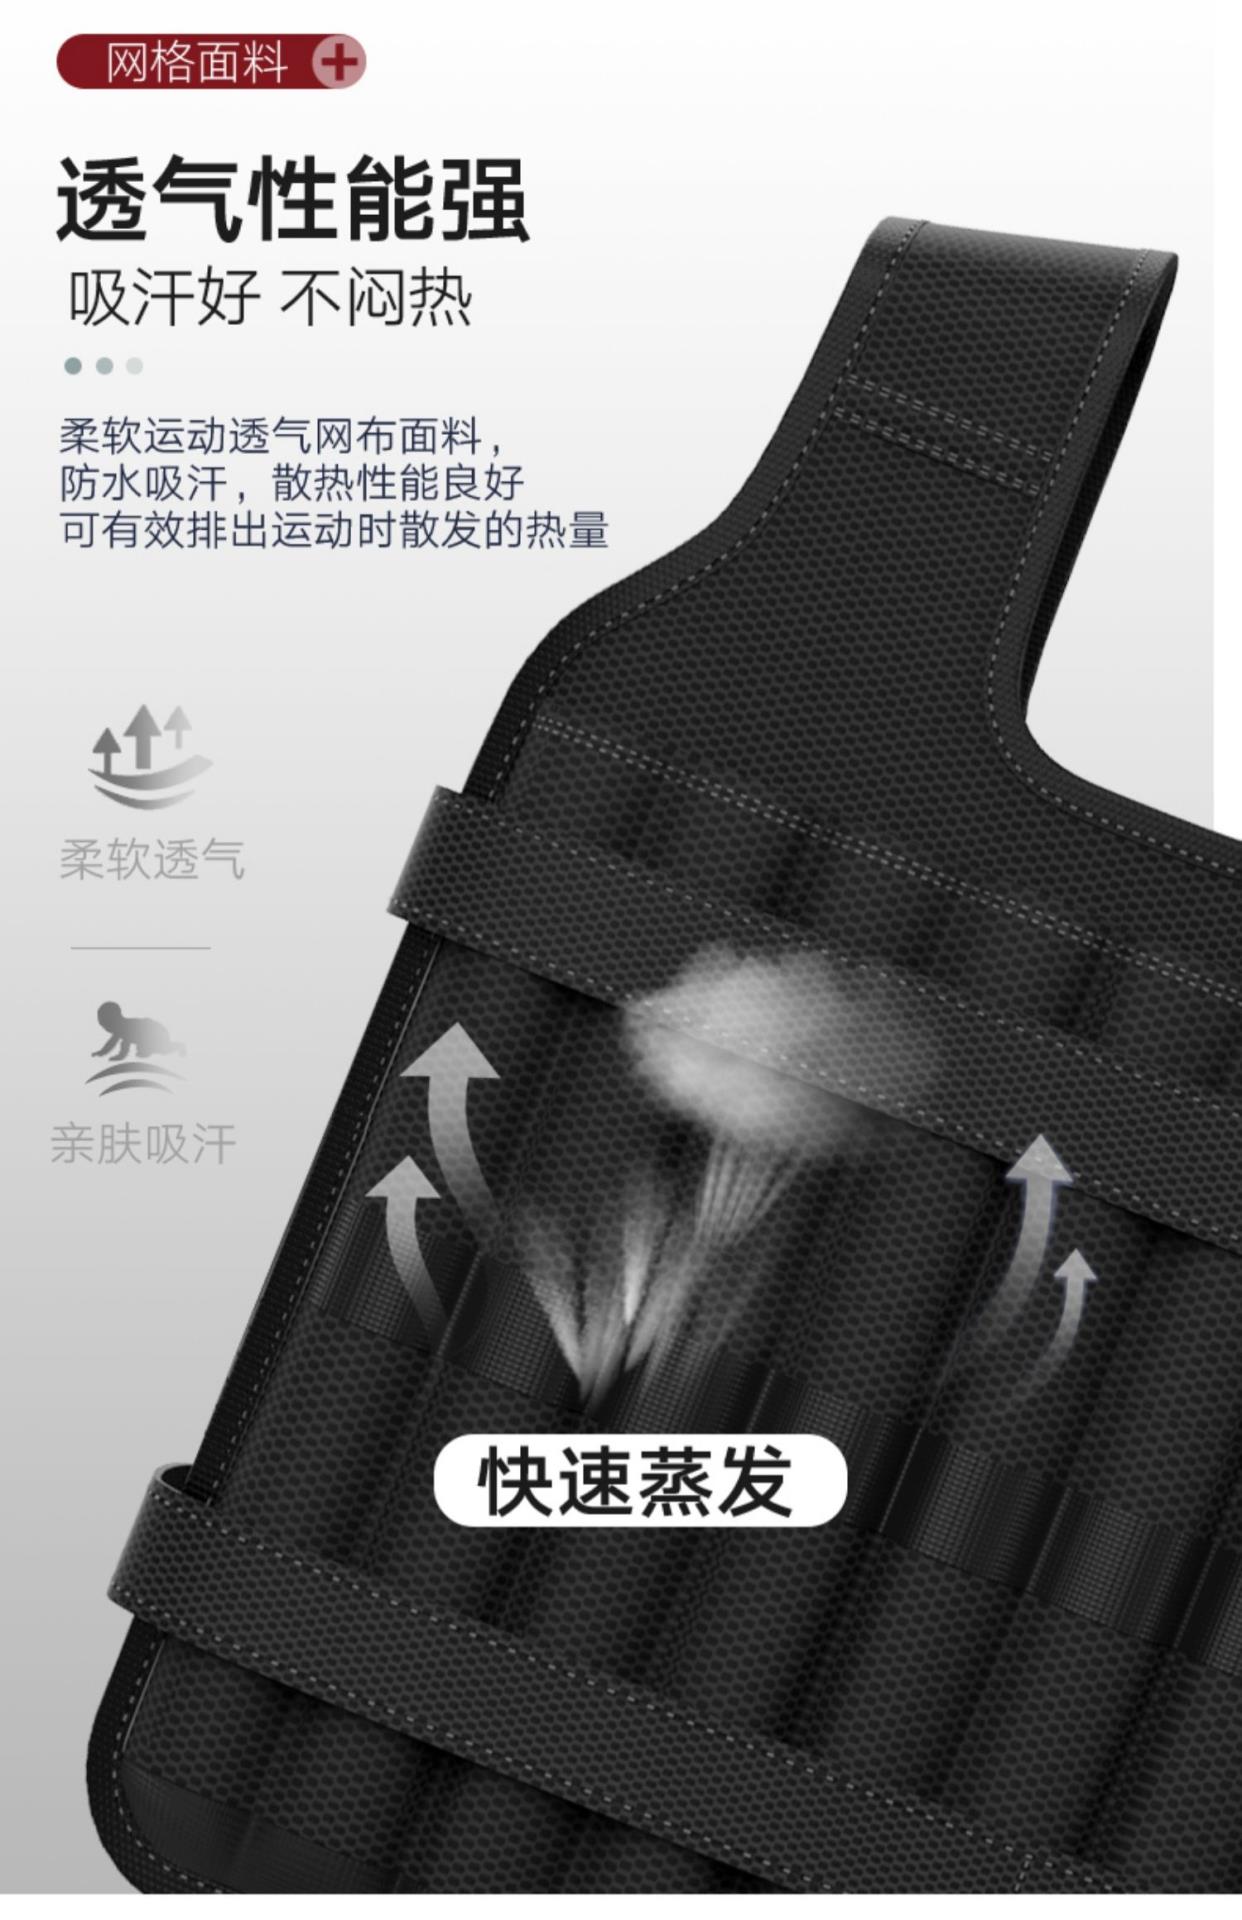 Trọng lượng mới vest chạy vest vô hình thép tấm siêu mỏng chì khối cát quần áo thiết bị thể dục dụng cụ thể thao xà cạp - Taekwondo / Võ thuật / Chiến đấu